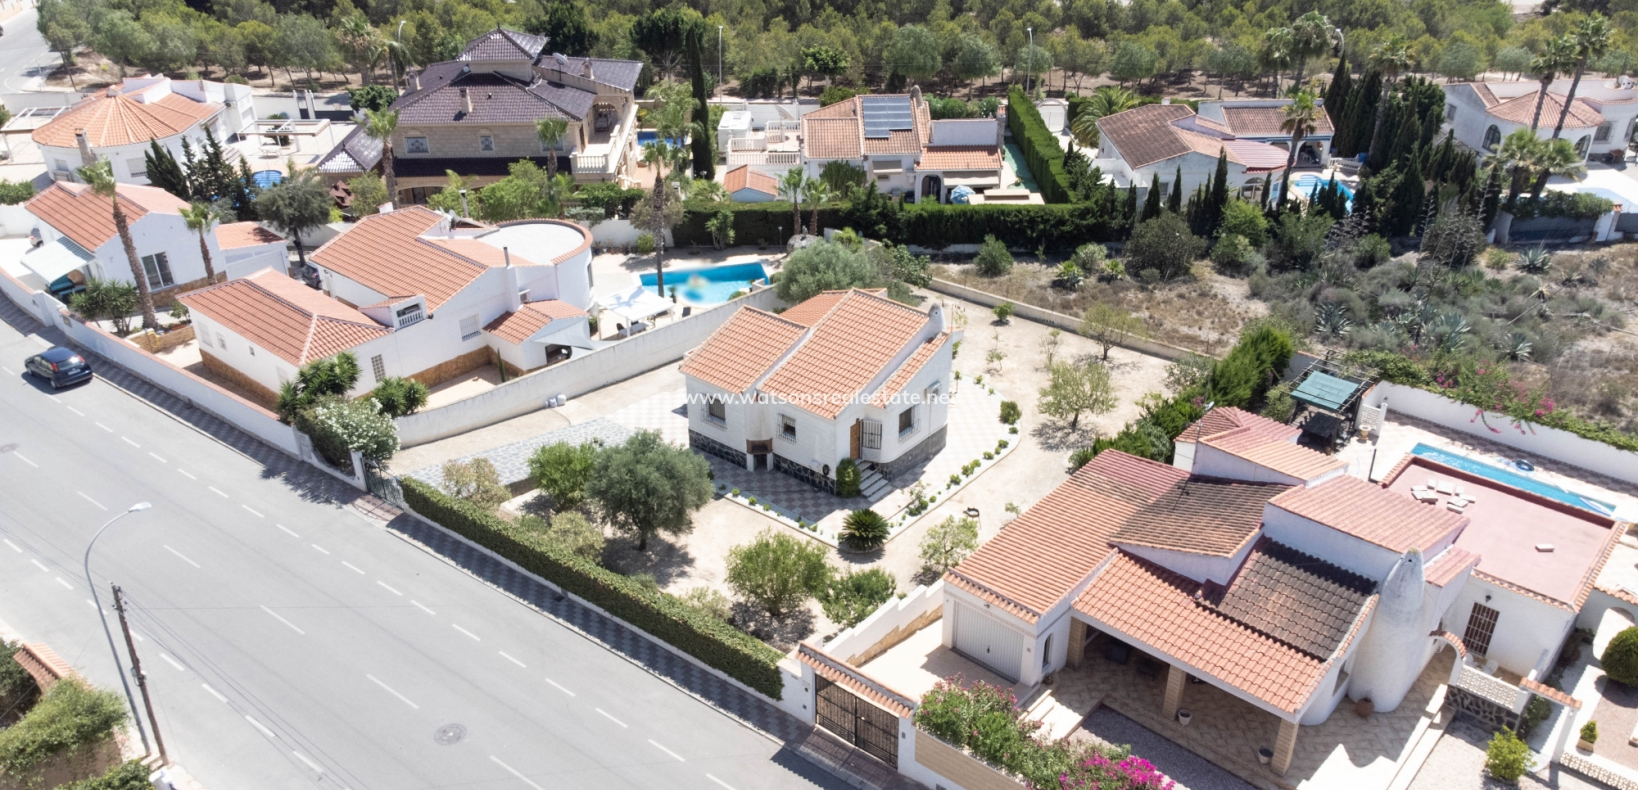 Freistehende Villa zu verkaufen an der Costa Blanca